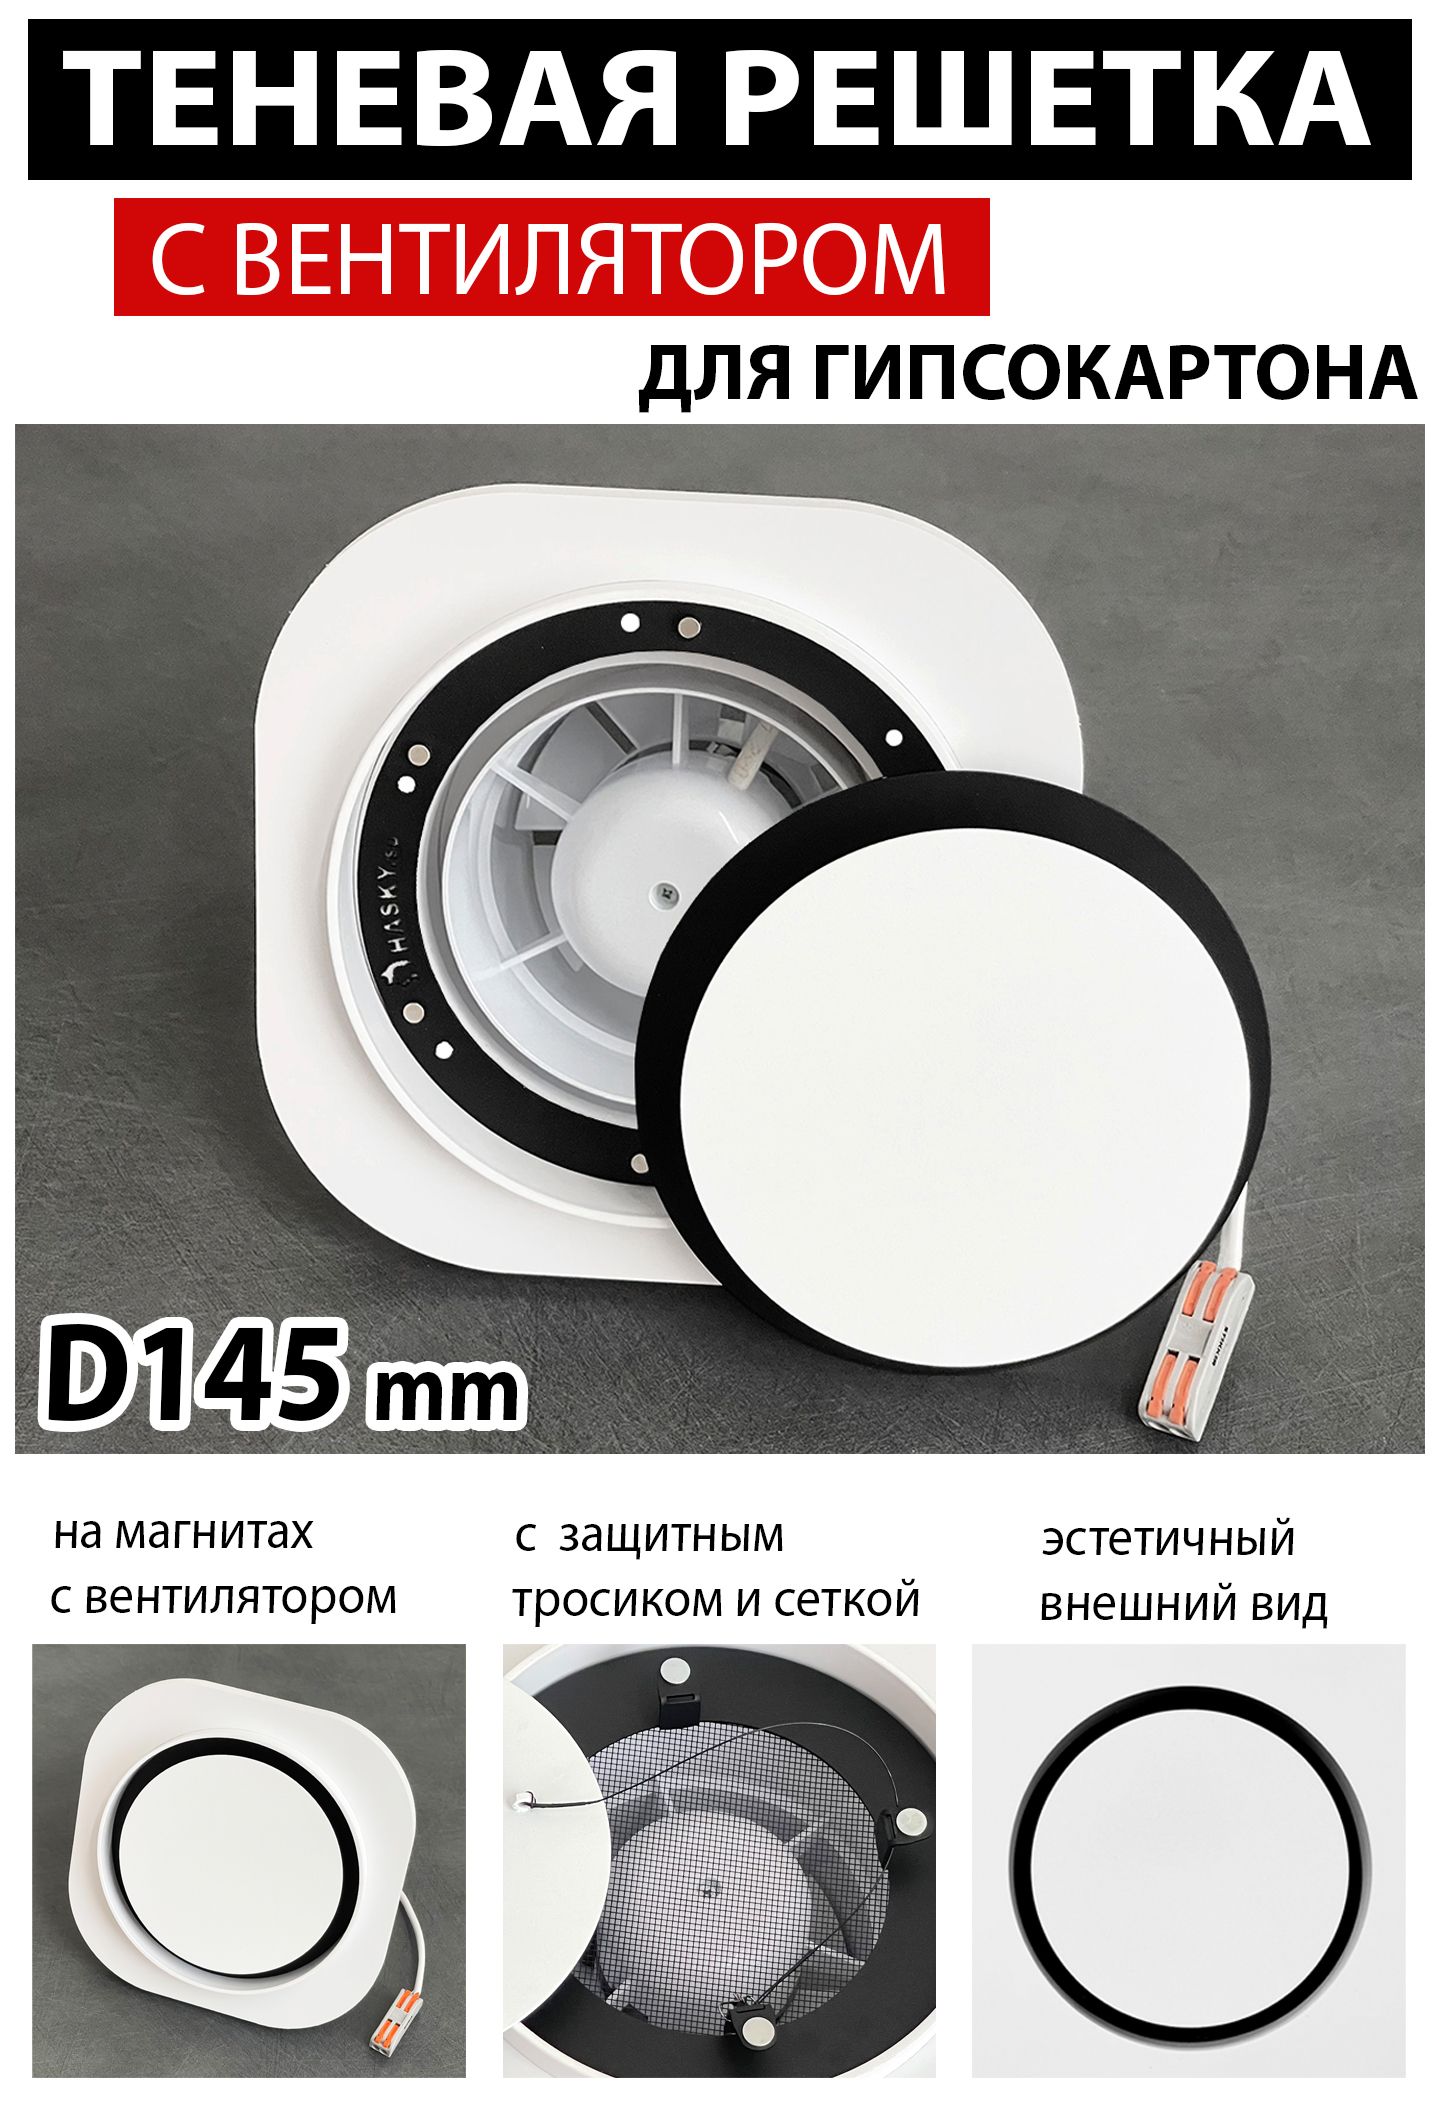 РешеткамагнитнаятеневаявентиляционнаясвентиляторомподГКЛ-D145mm